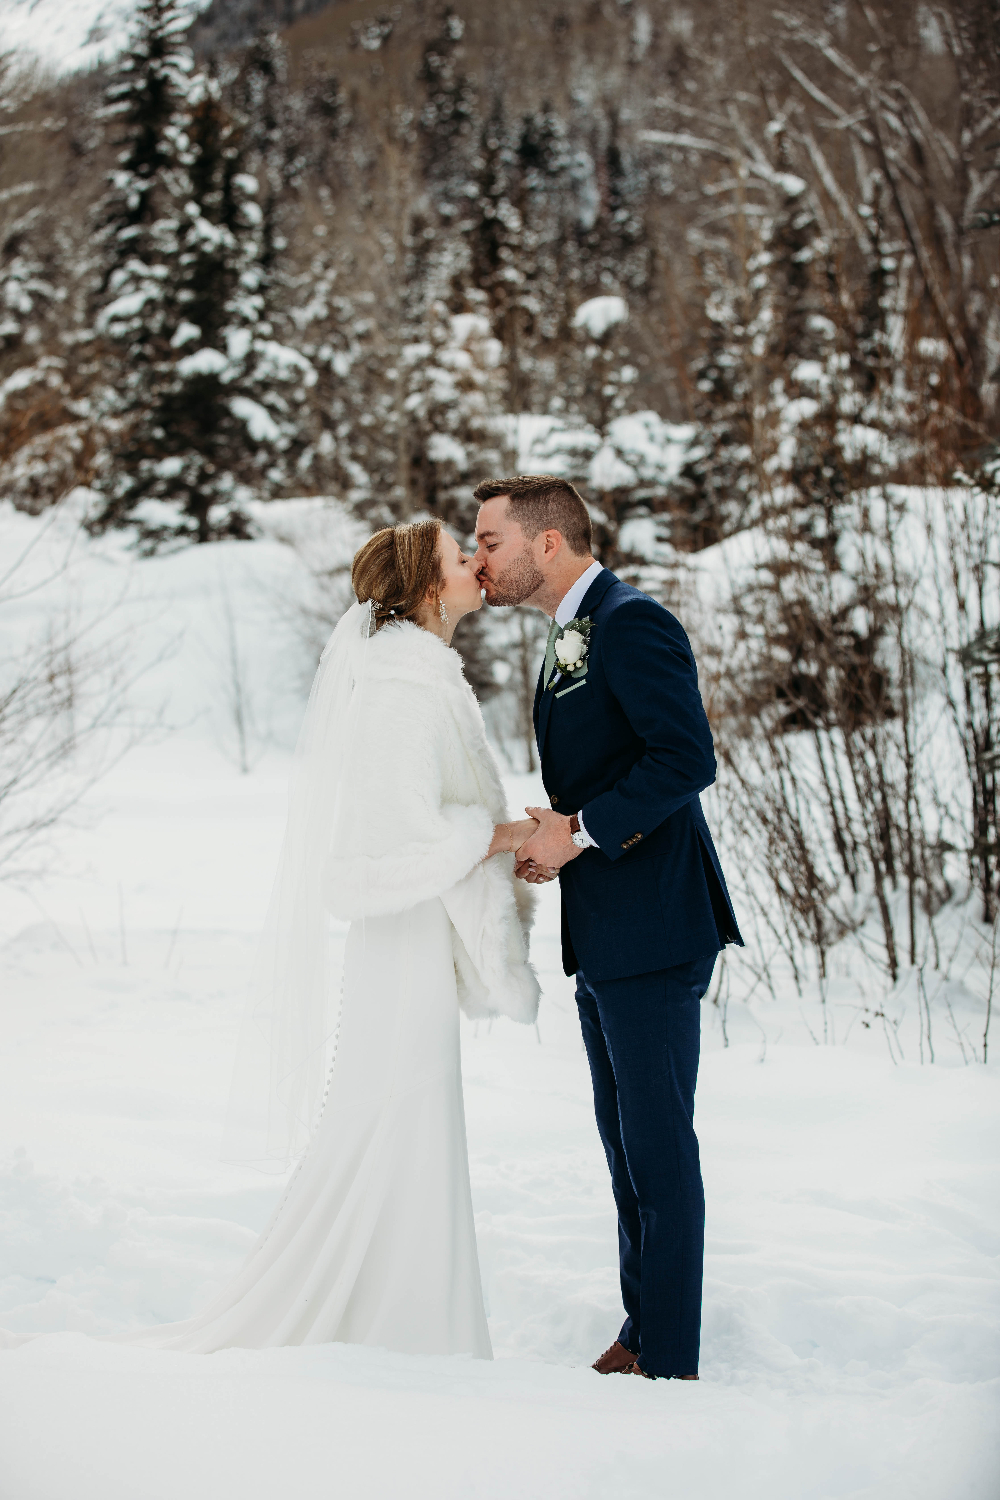 Pre-ceremony kiss - Colorado elopement in winter